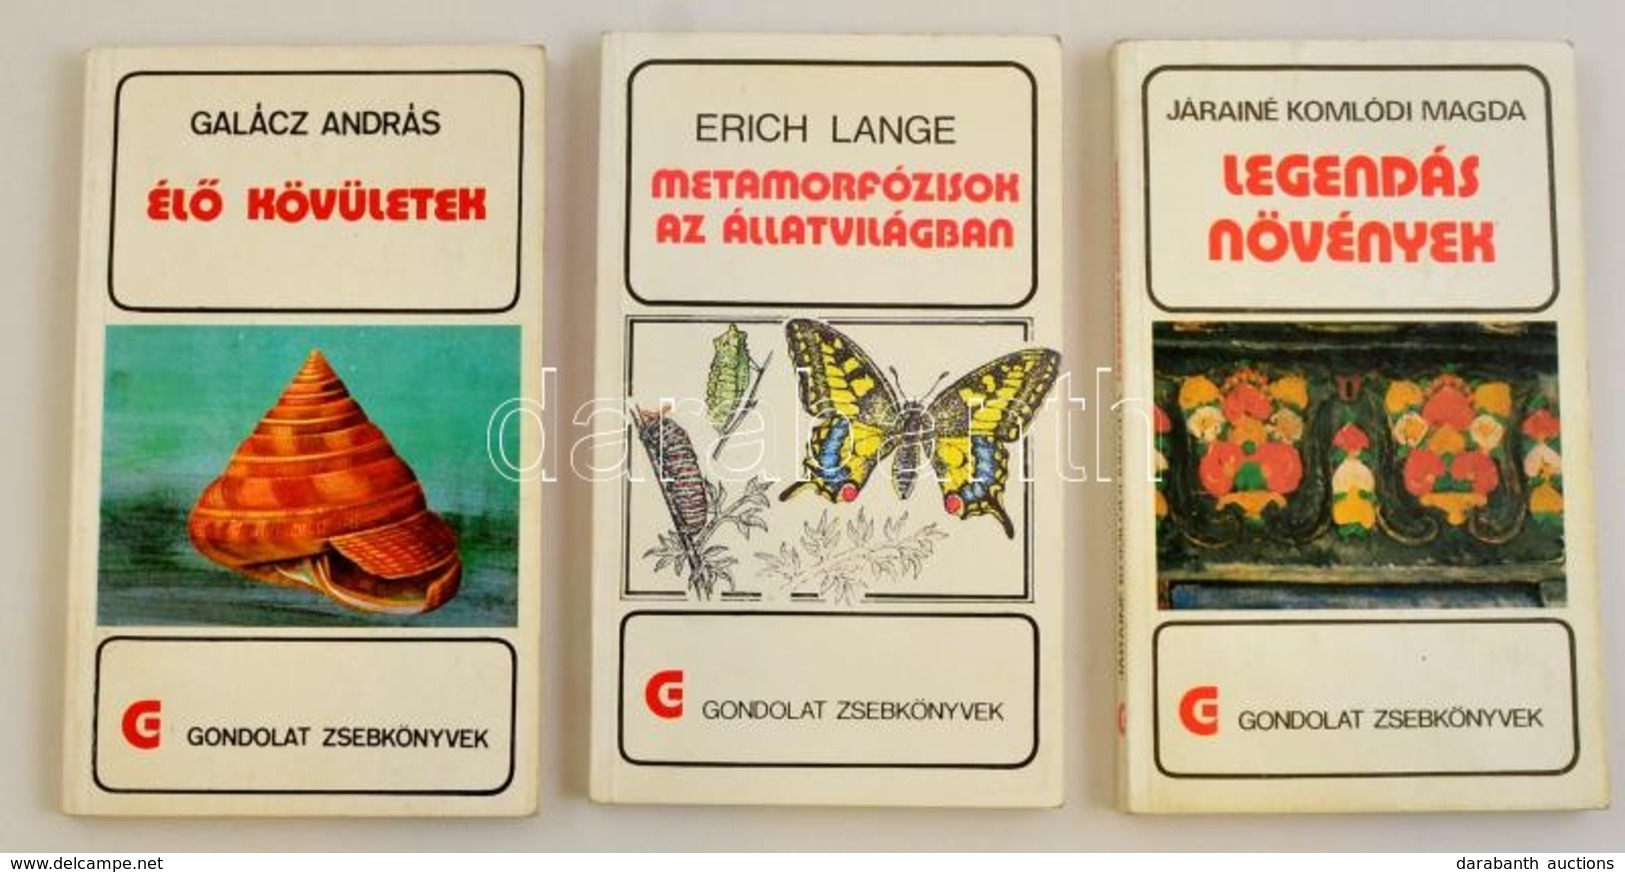 Gondolat Zsebkönyvek 3 Kötete: 
Erich Lange: Metamorfózisok Az állatvilágban. 
Galácz András: Él? Kövületek. 
Járainé Ko - Sin Clasificación